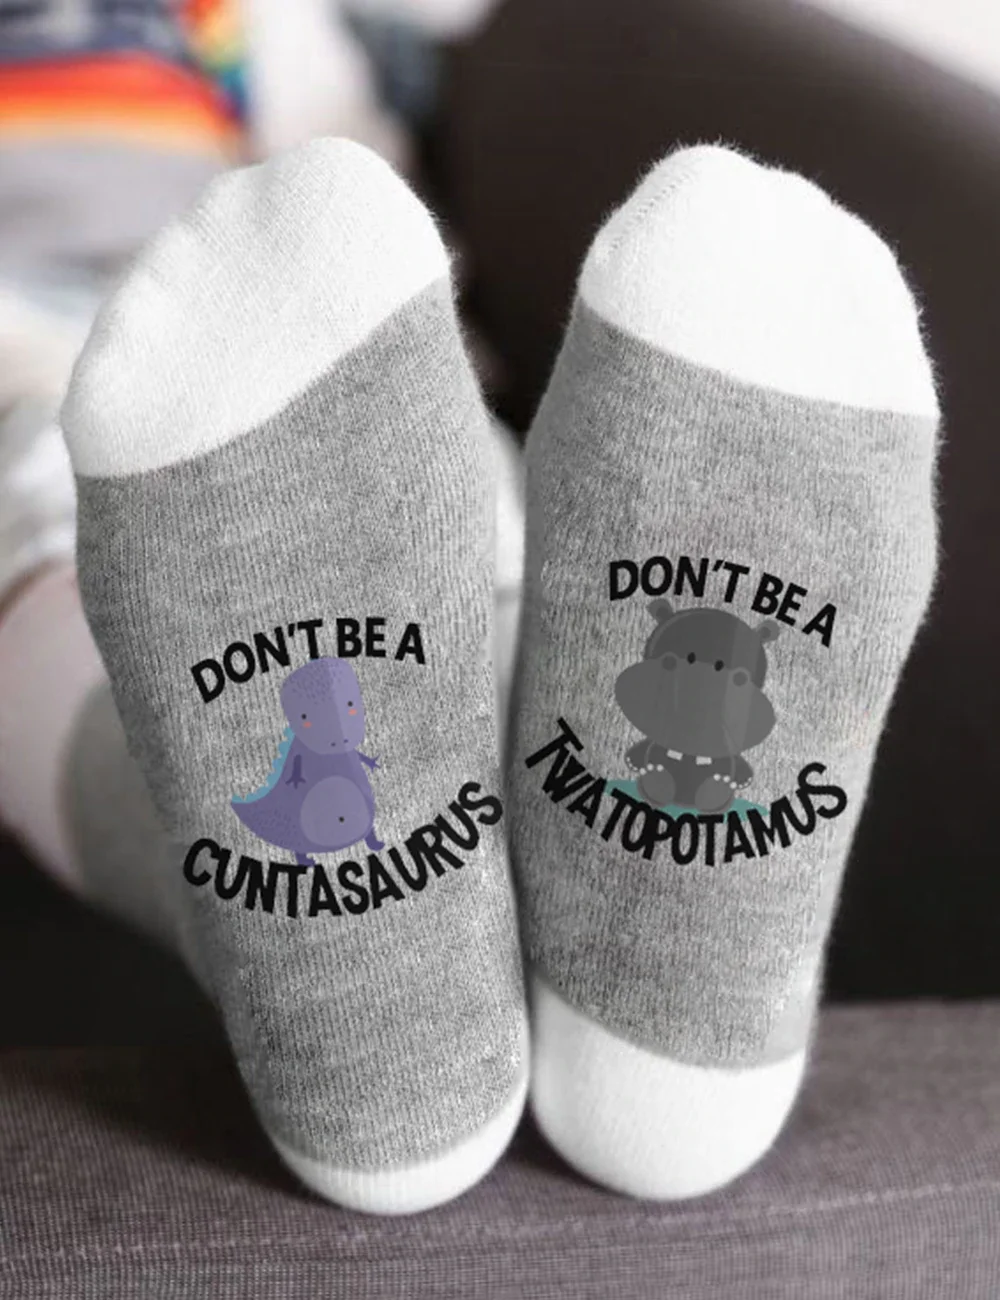 Don't Be A Cuntasaurus Twatopotamus Socks